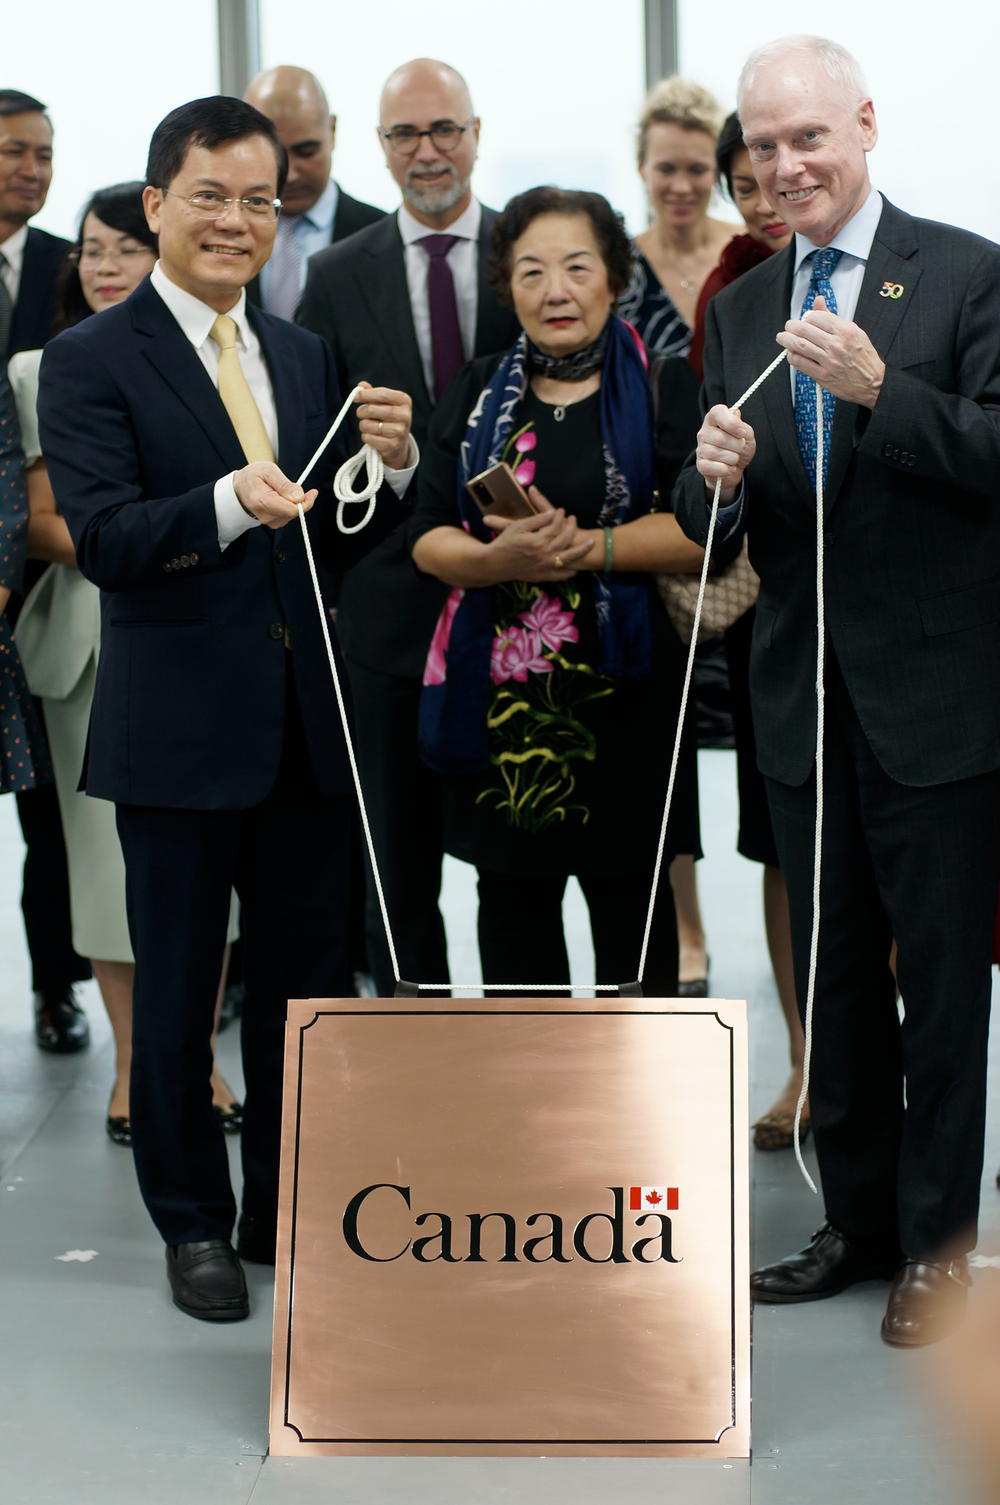 Canada khởi công trụ sở mới của Đại sứ quán, khẳng định sự hiện diện ở Việt Nam ngày càng tăng - Ảnh 3.